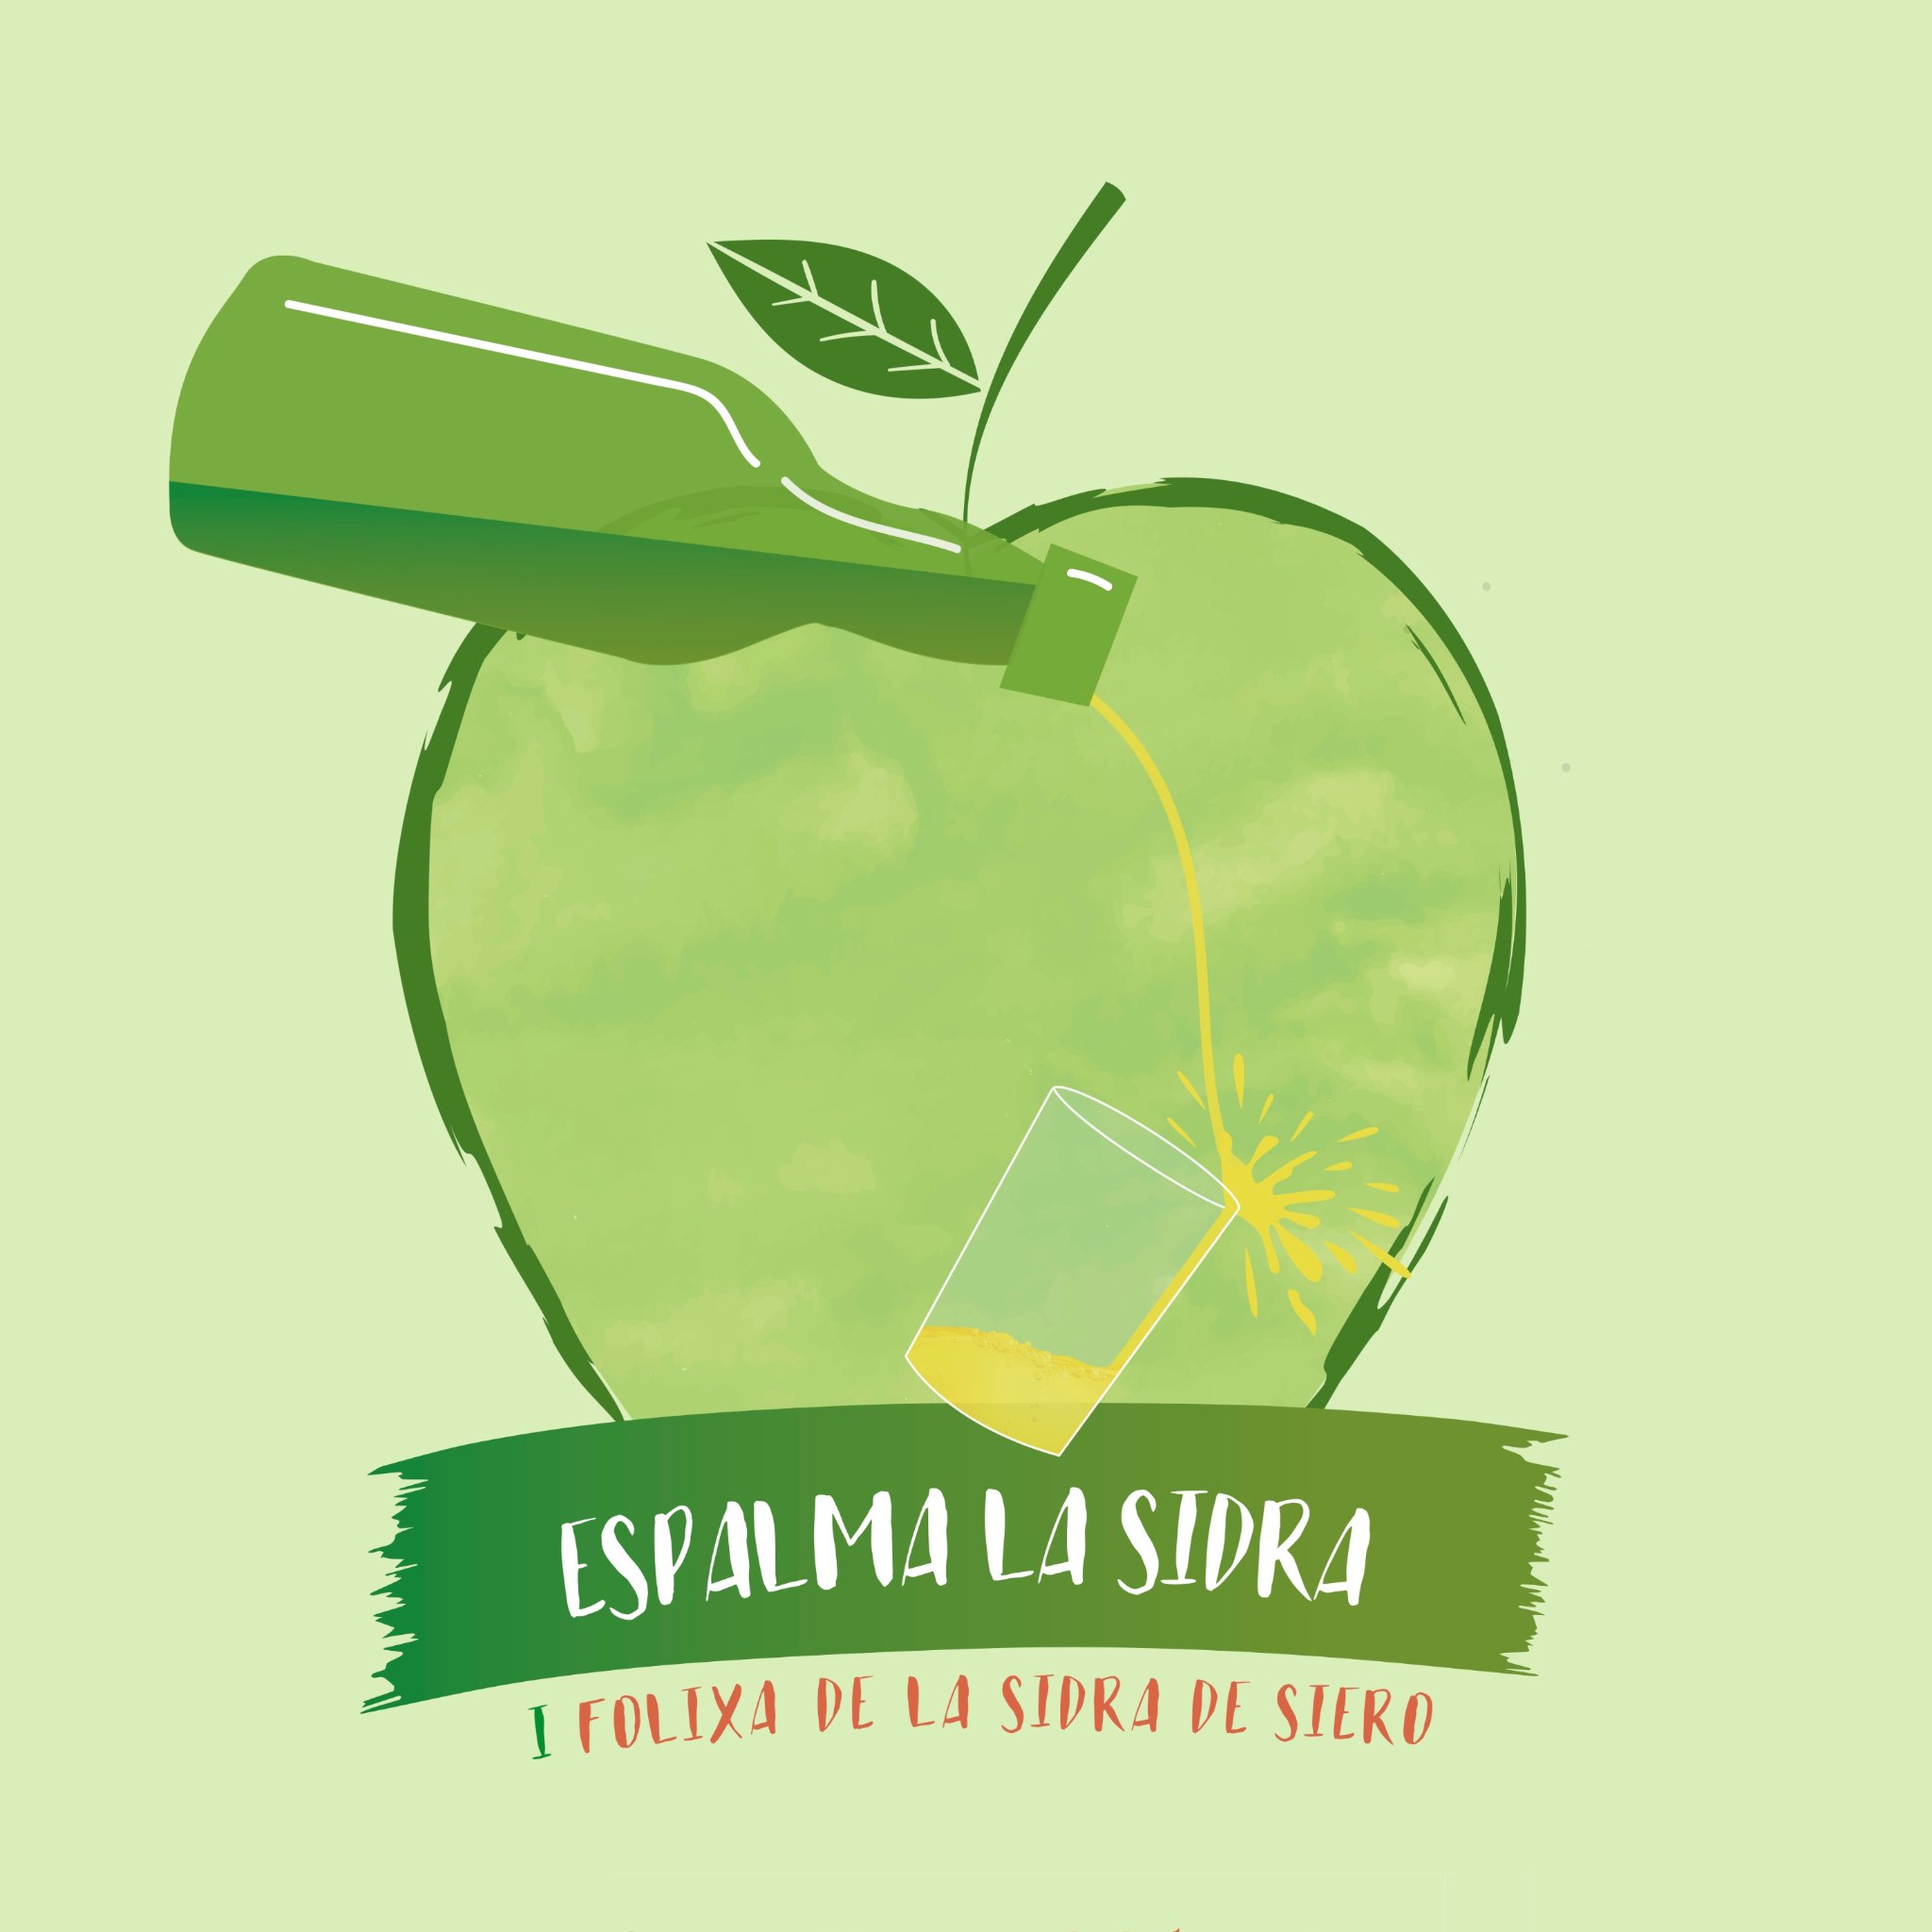 🍏Espalma La Sidra es la I Folixa de la Sidra de Siero.
📆 28 y 29 de abril de 2018.
📌 Plaza Cubierta de Pola de Siero.